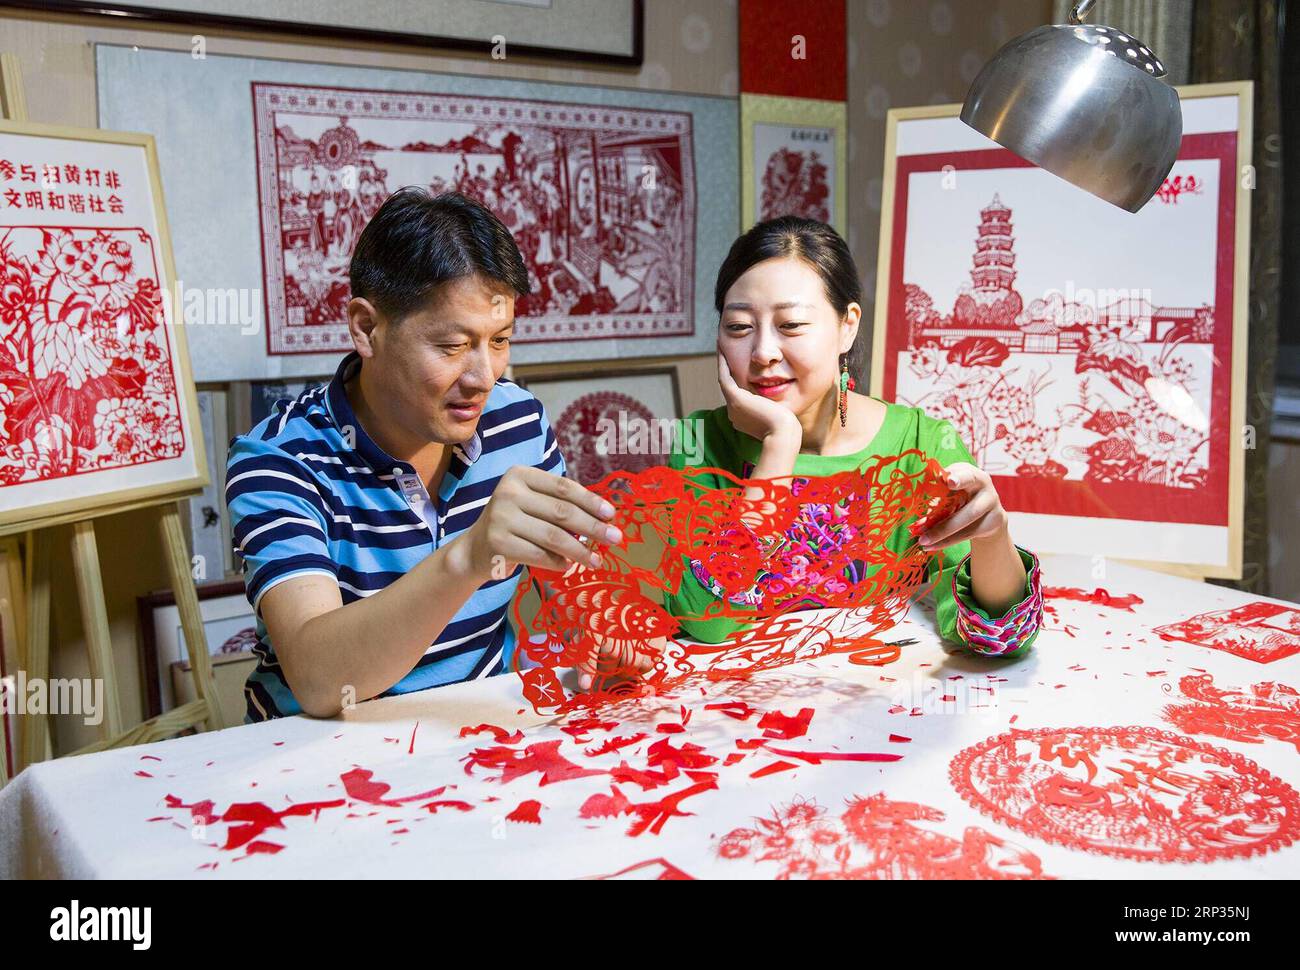 (180921) -- TENGZHOU, 21. September 2018 -- die Papierschneiderin Qiu Ting und ihr Ehemann Qiu Hanping schauen sich ein Papierschneiderei mit Erntethema zu Hause in der Stadt Tengzhou, Ostchinesische Provinz Shandong, 17. September 2018 an. Qiu verbrachte mehr als zwei Monate damit, ein 2.018 Zentimeter langes Papercutting zu kreieren, um das erste chinesische Bauernerntfest zu begrüßen, das auf die herbstliche Tagundnachtgleiche fällt, oder 23. September dieses Jahres. ) (Hxy) CHINA-TENGZHOU-PAPERCUTTING-HARVEST (CN) SongxHaicun PUBLICATIONxNOTxINxCHN Stockfoto